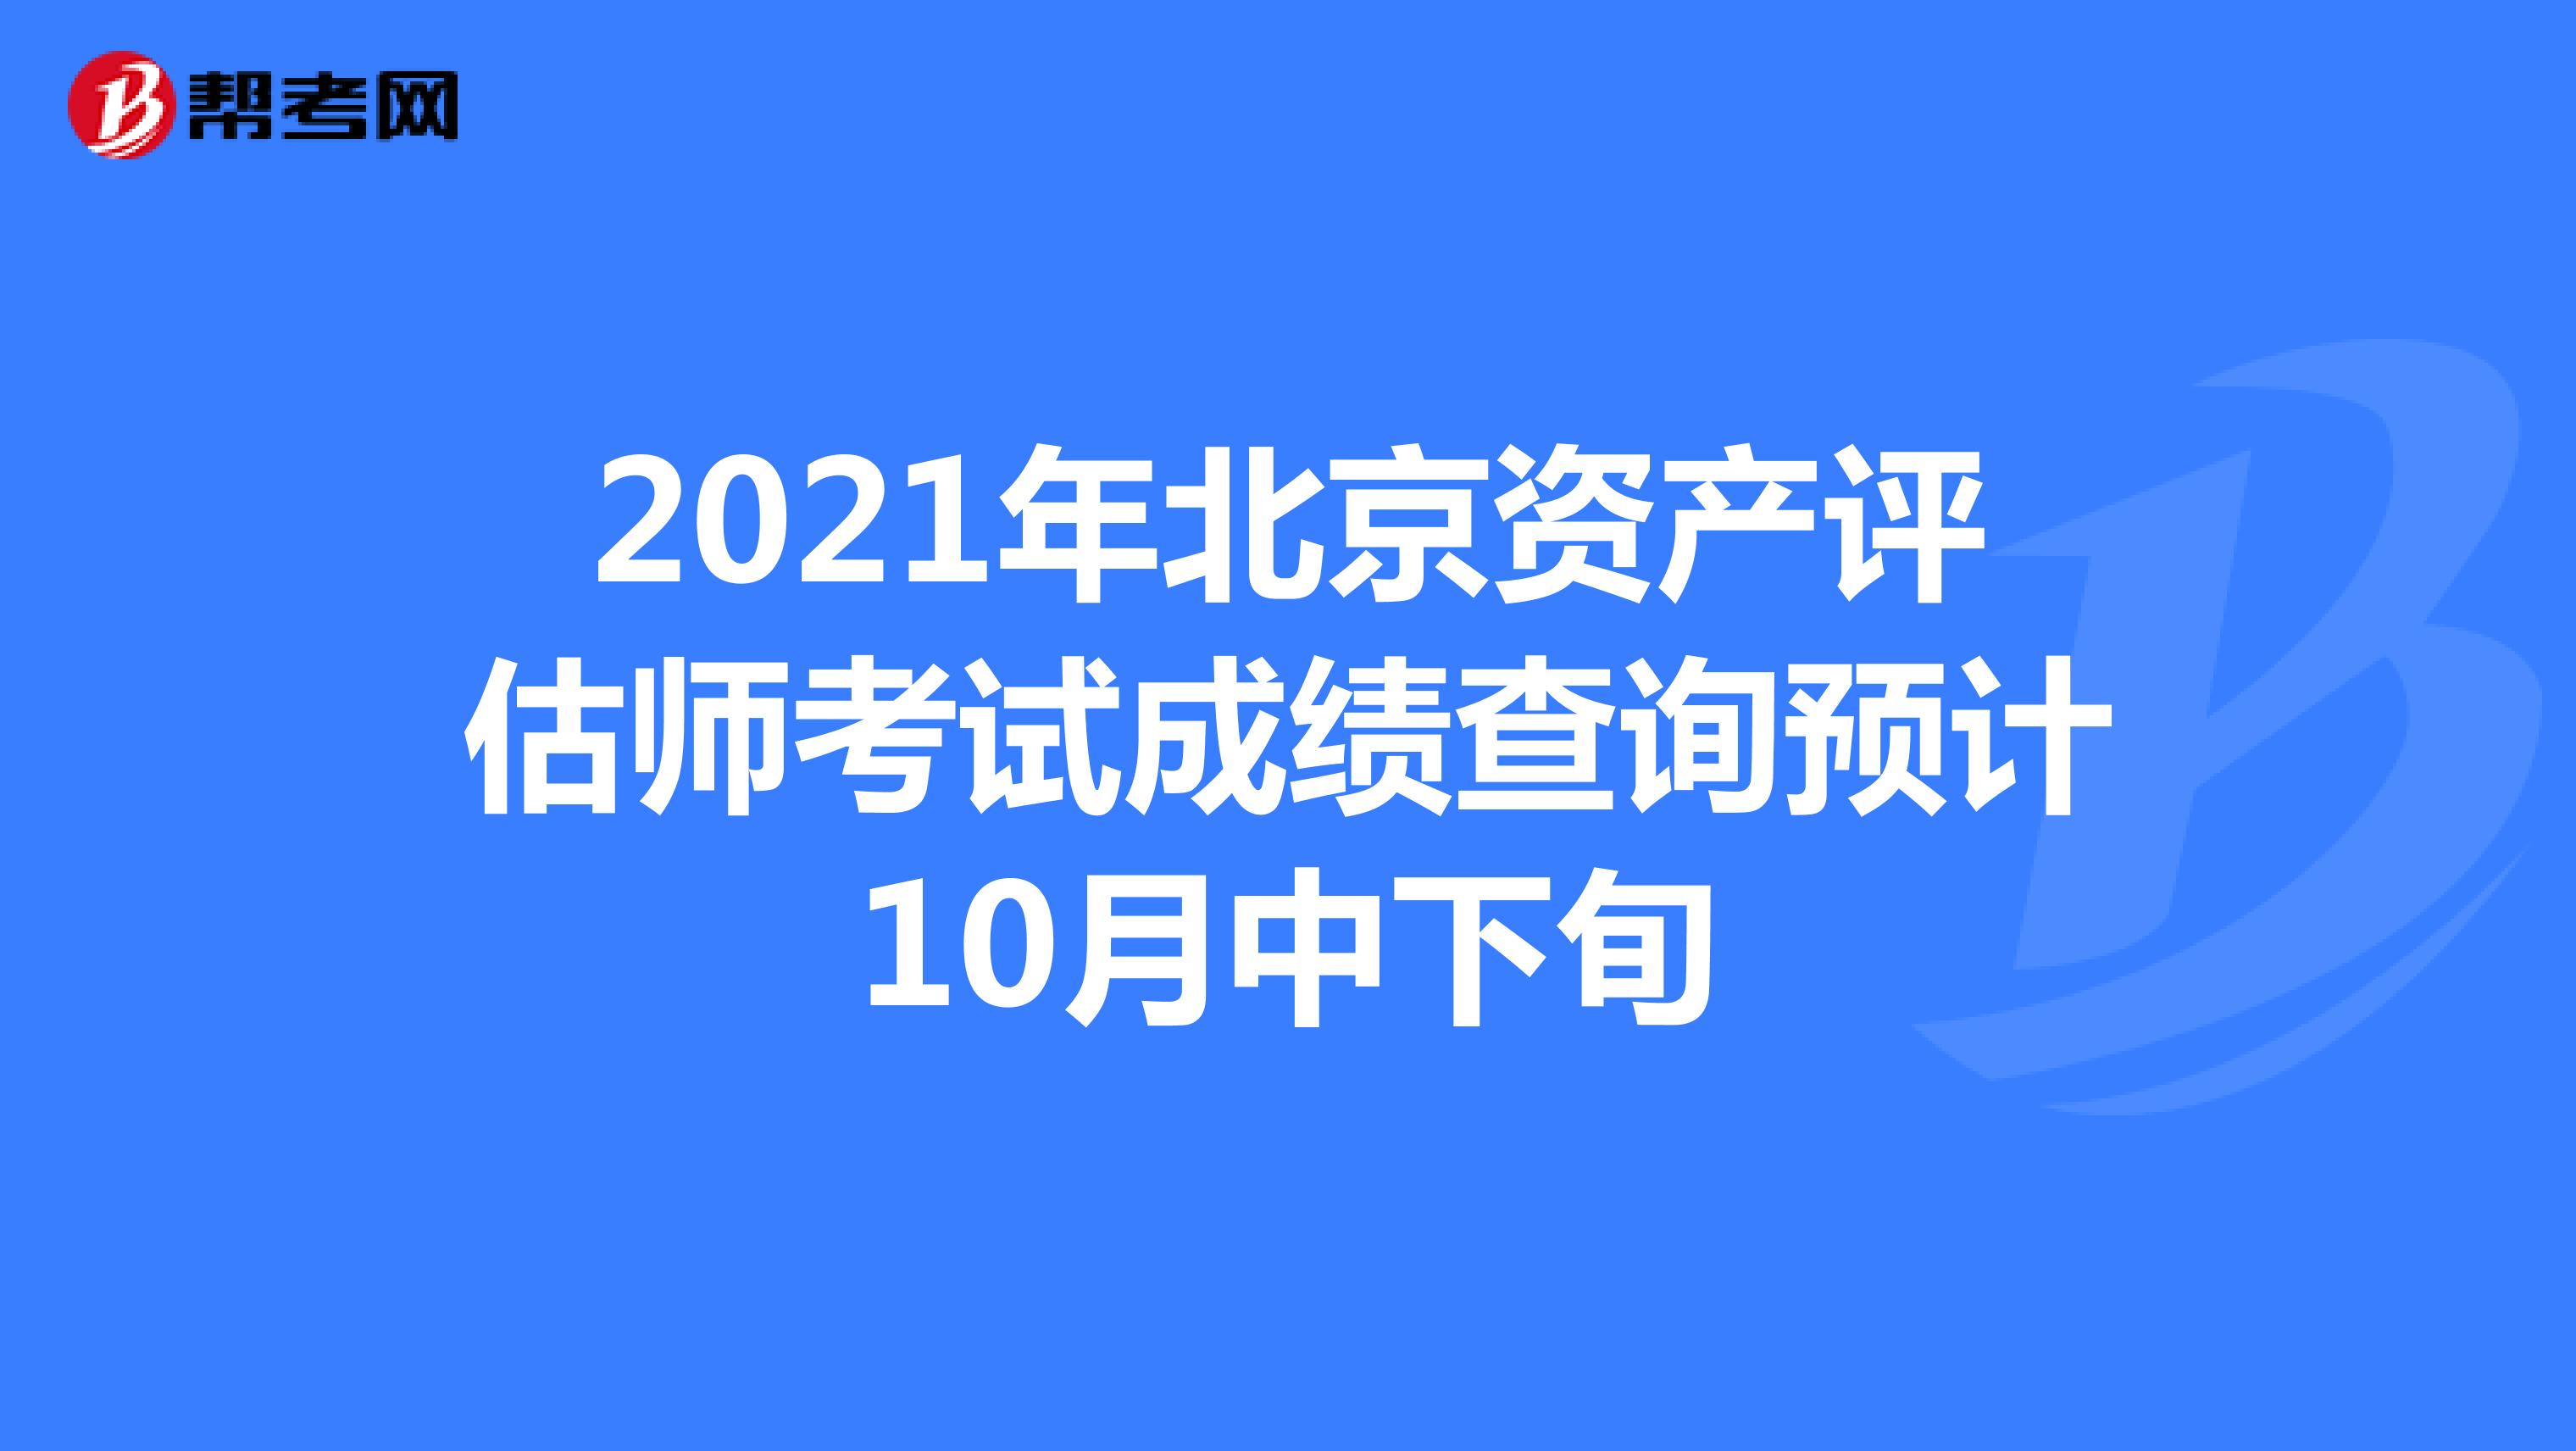 2021年北京资产评估师考试成绩查询预计10月中下旬